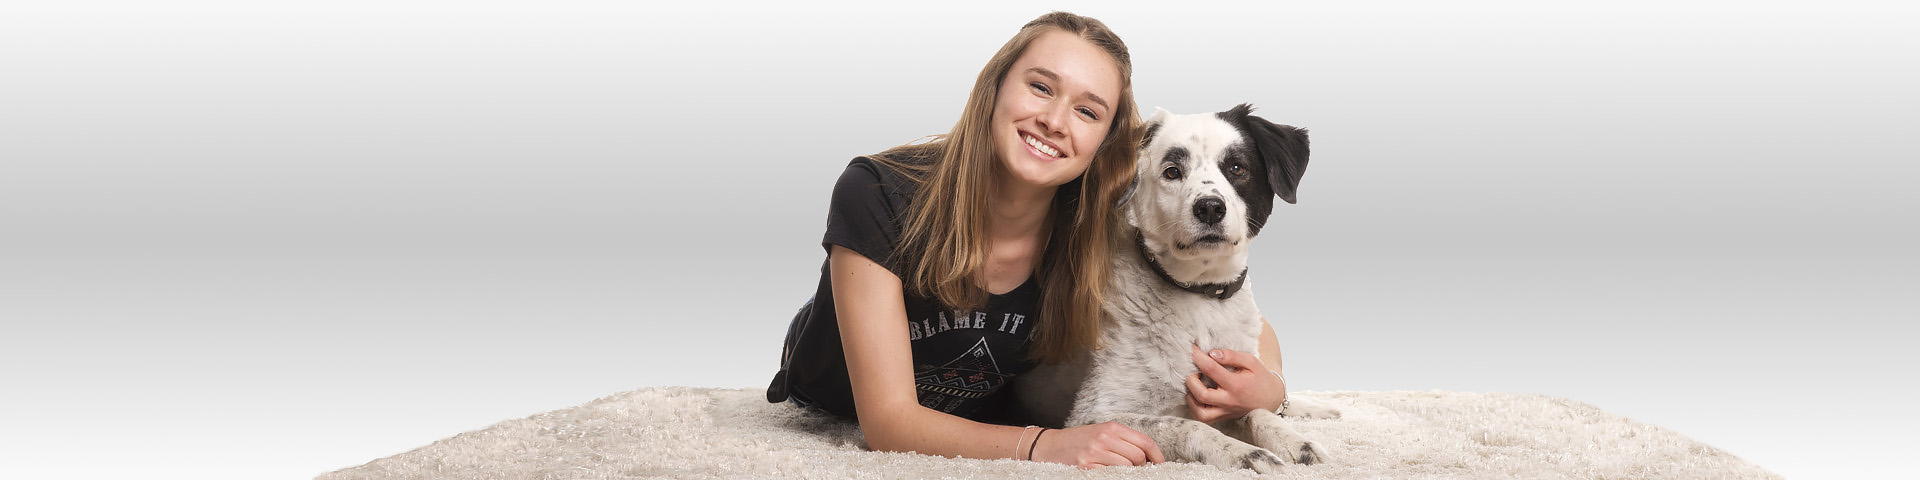 Eine junge Frau kuschelt sich zufrieden und glücklich an ihren Hund - Münchener Verein Tierhalterhaftpflichtversicherung